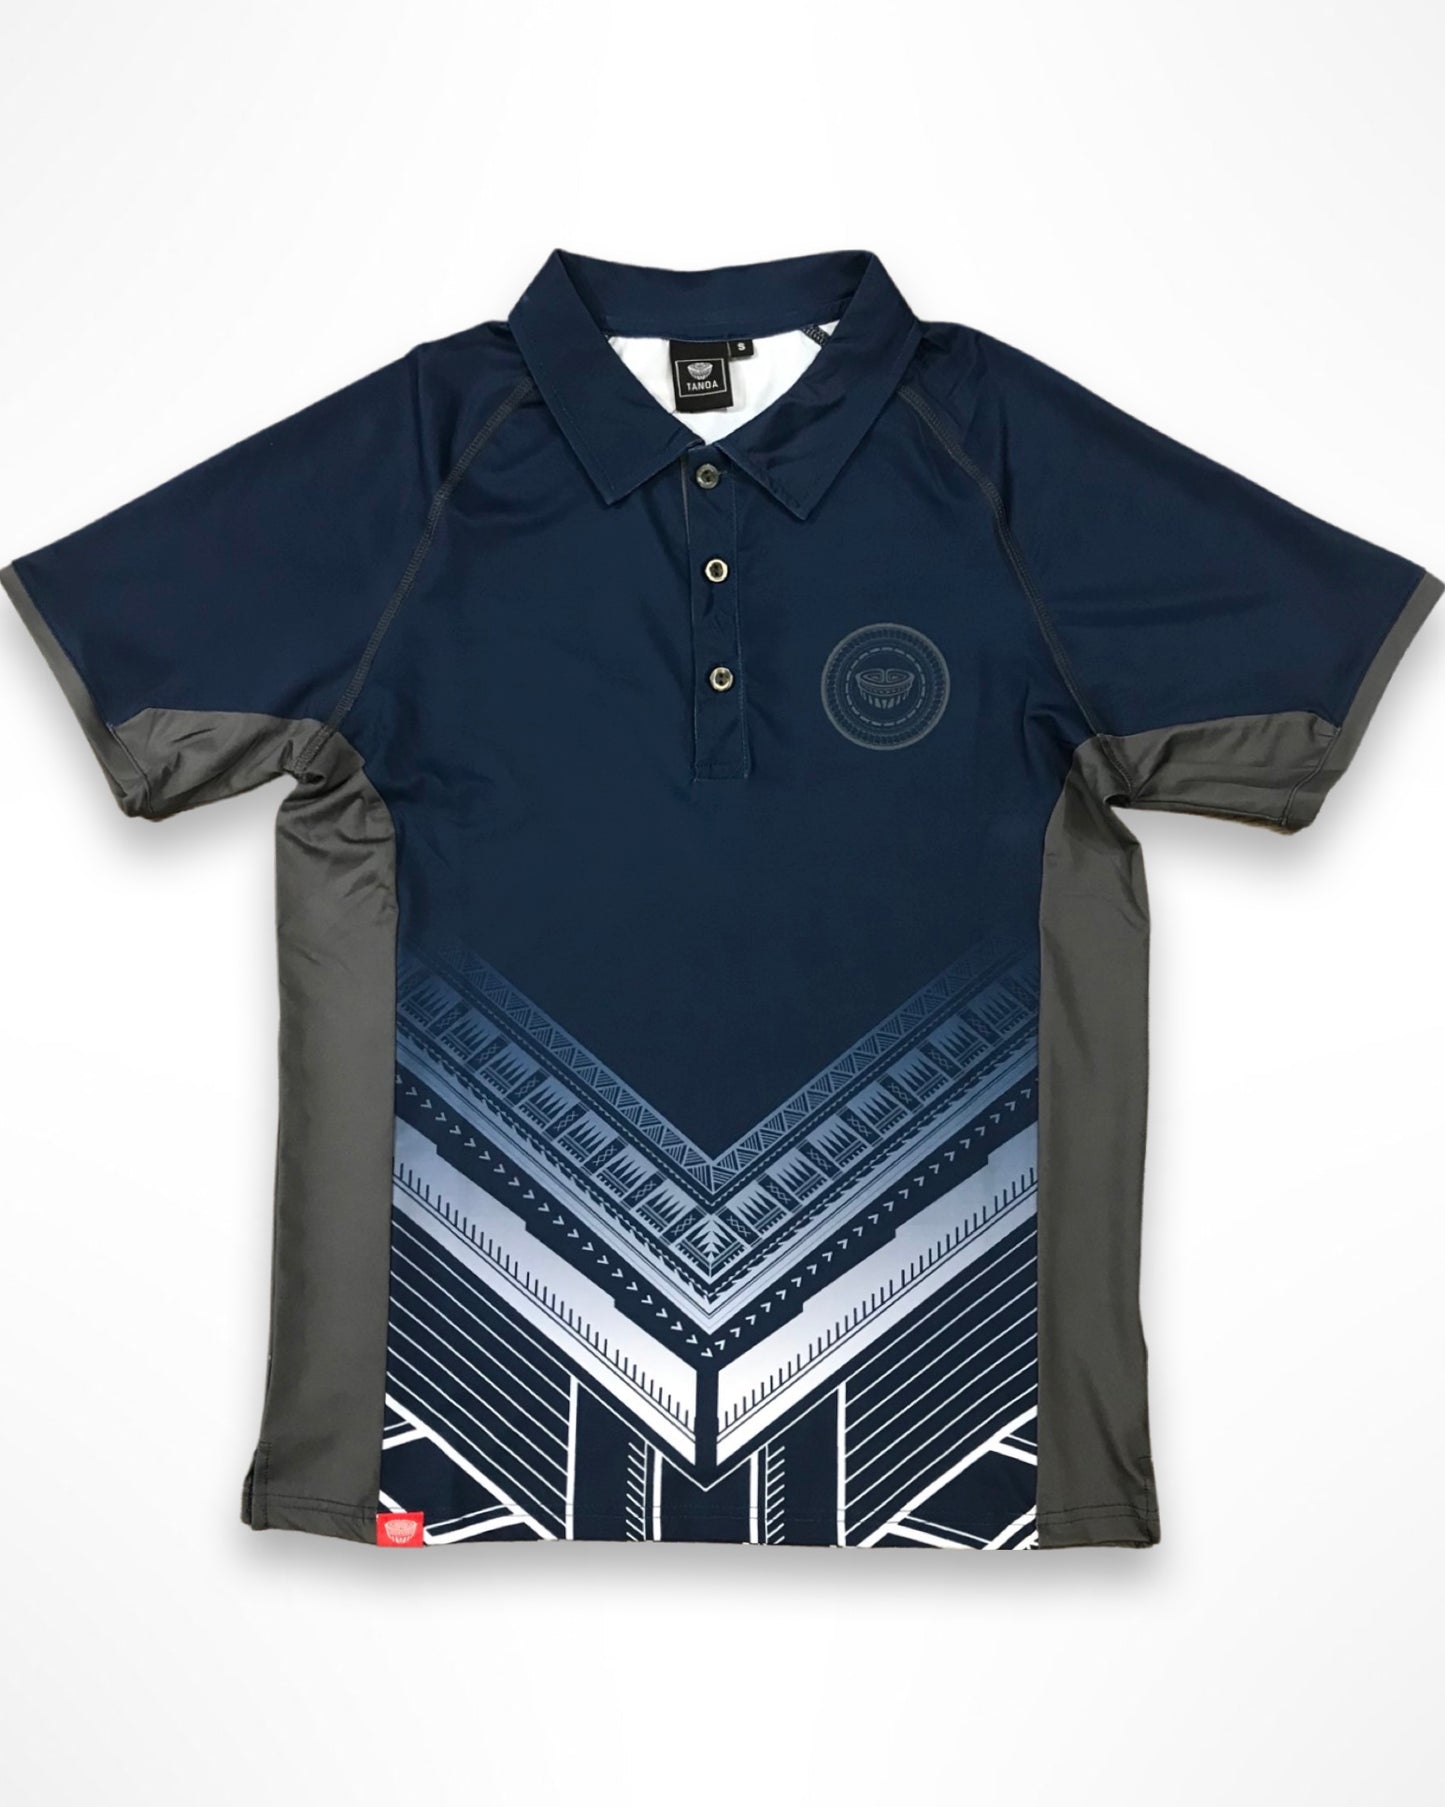 Tanoa Samoa Sublimated Polo Shirt - PM393